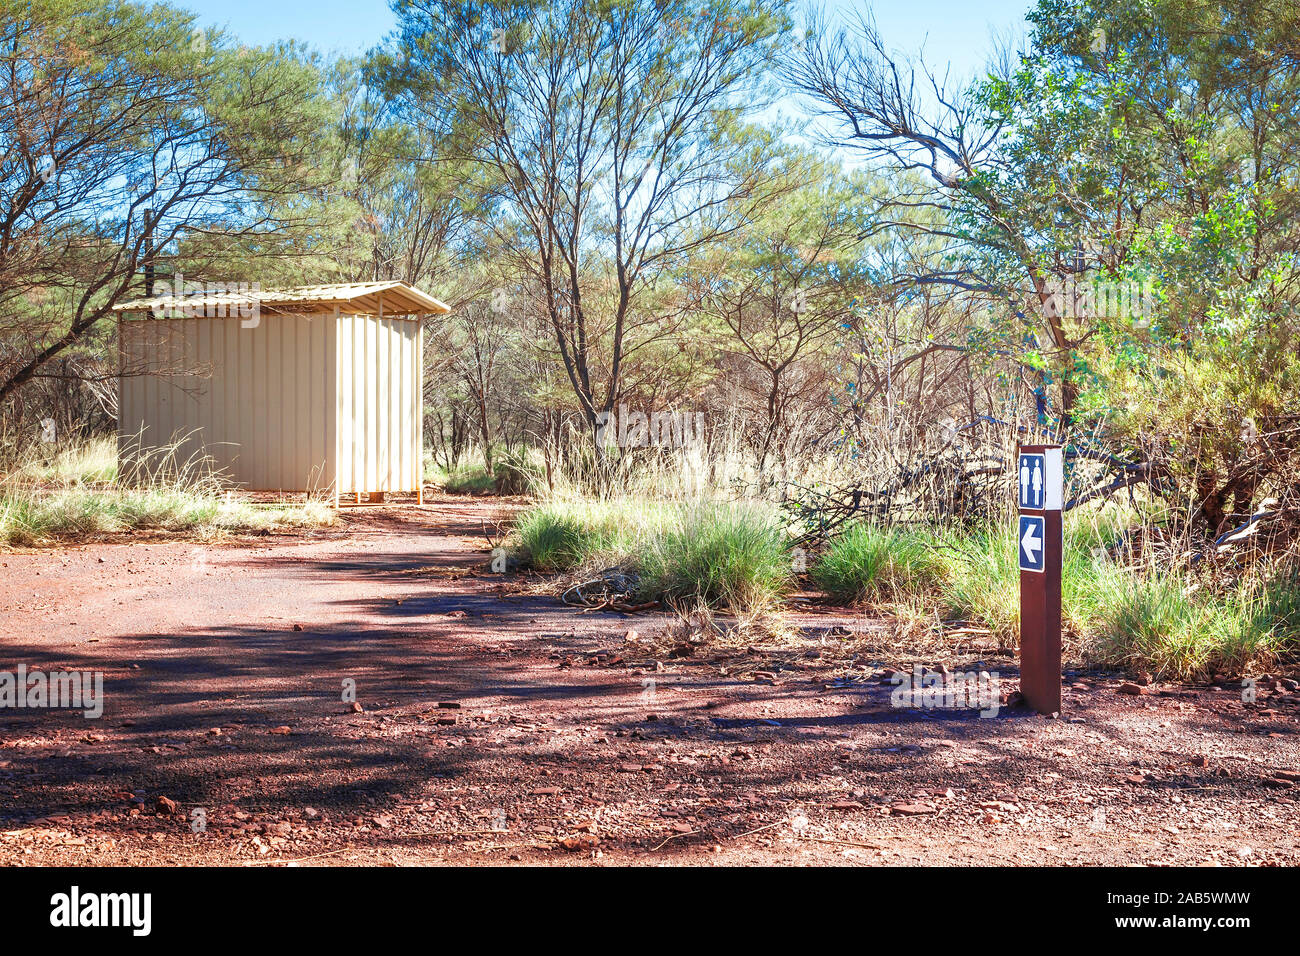 Eine Toilette (Bush loo) im Australischen Busch Foto Stock